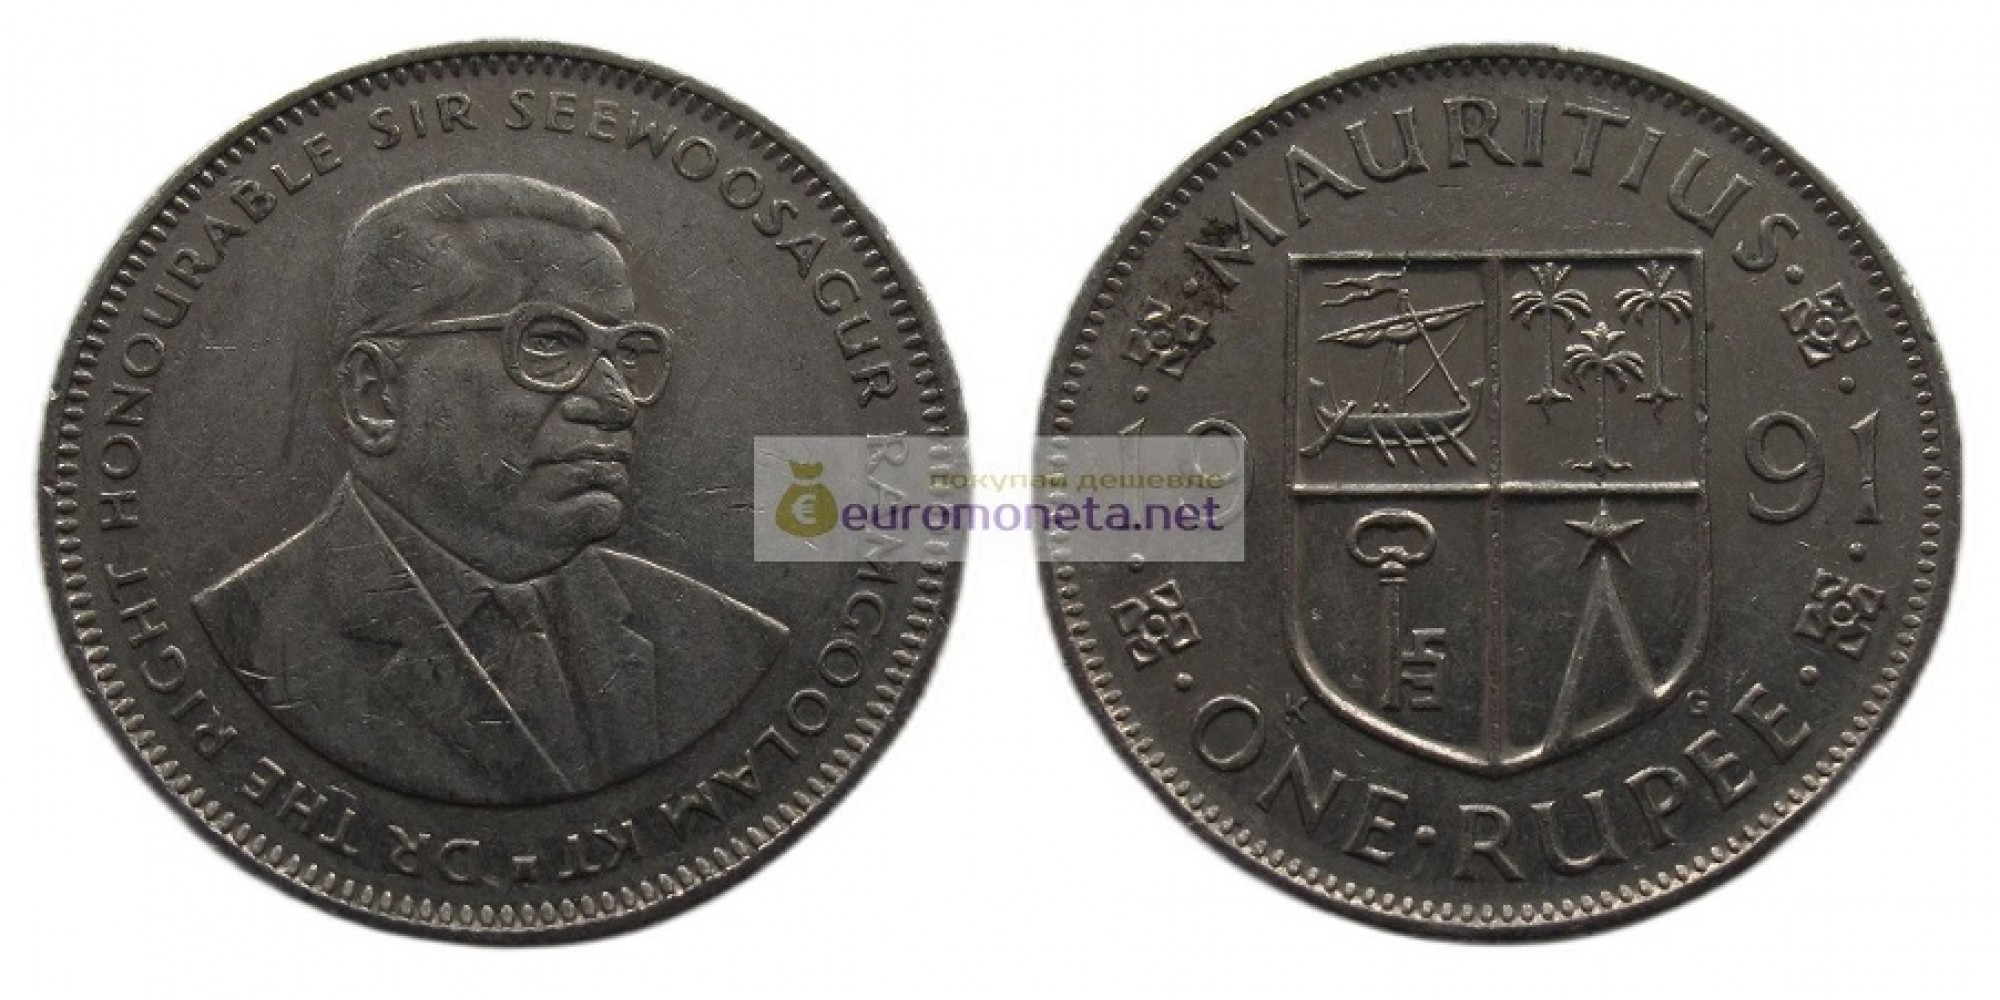 Республика Маврикий 1 рупия 1991 год. Сивусагур Рамгулам